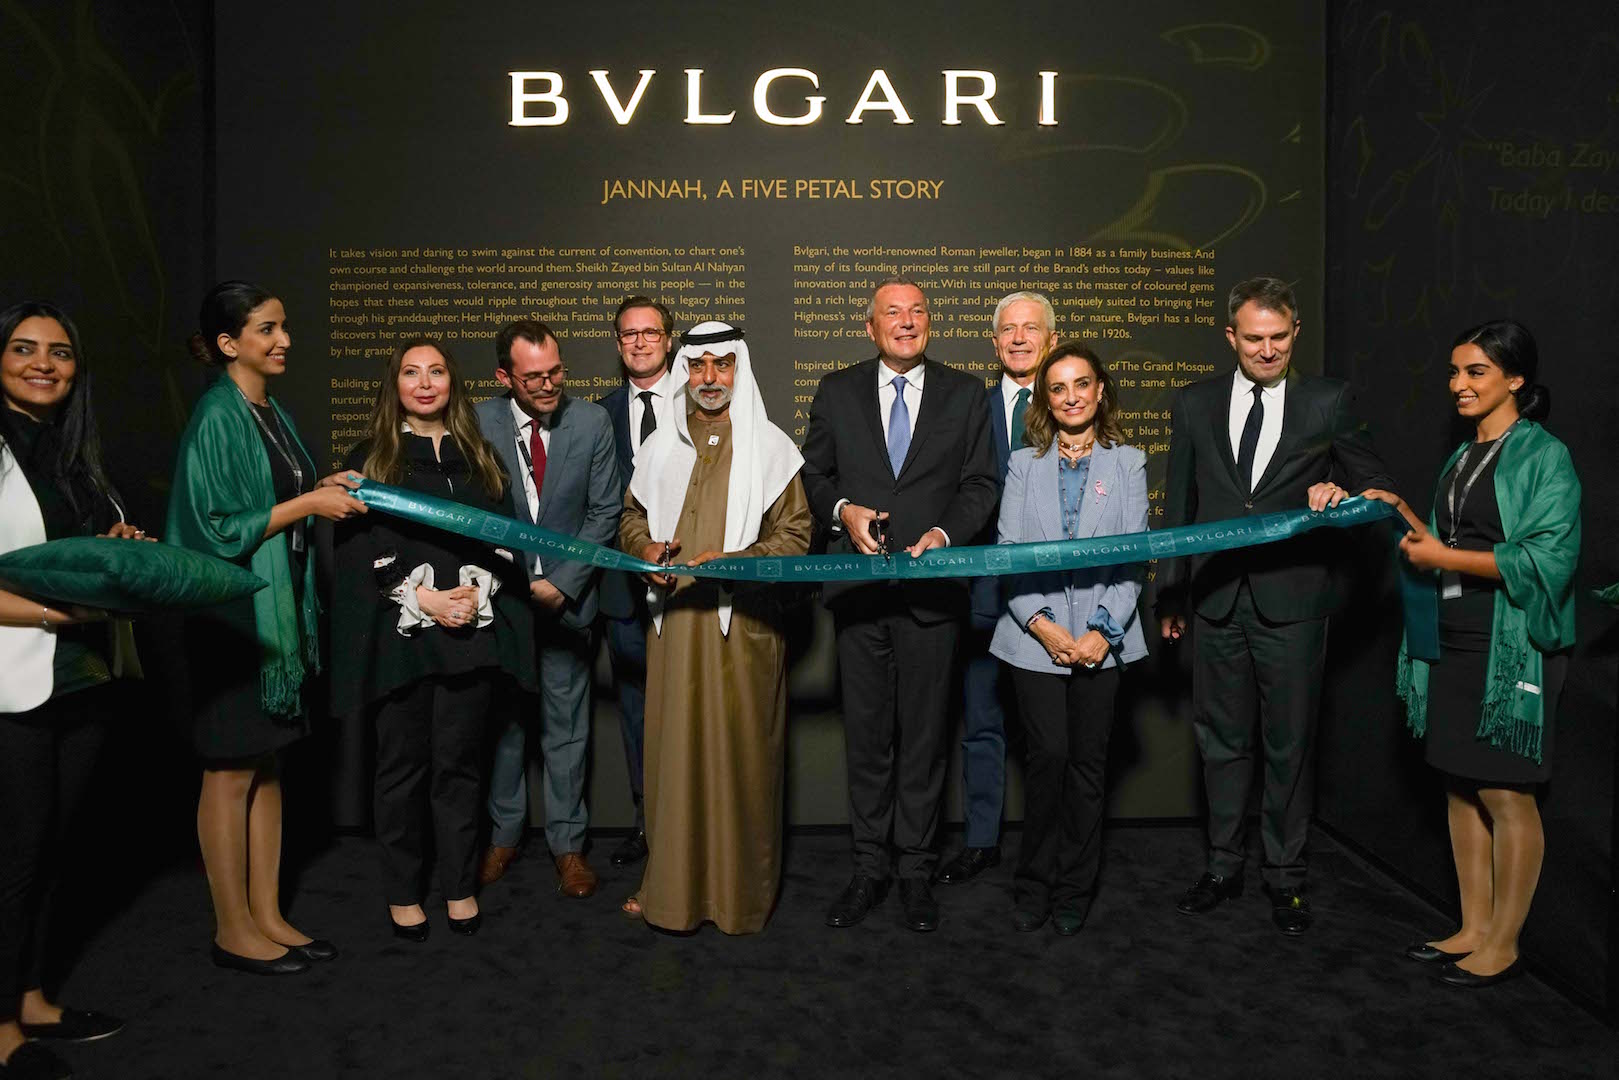 Opening of Bvlgari Exhibition at Louvre Abu Dhabi